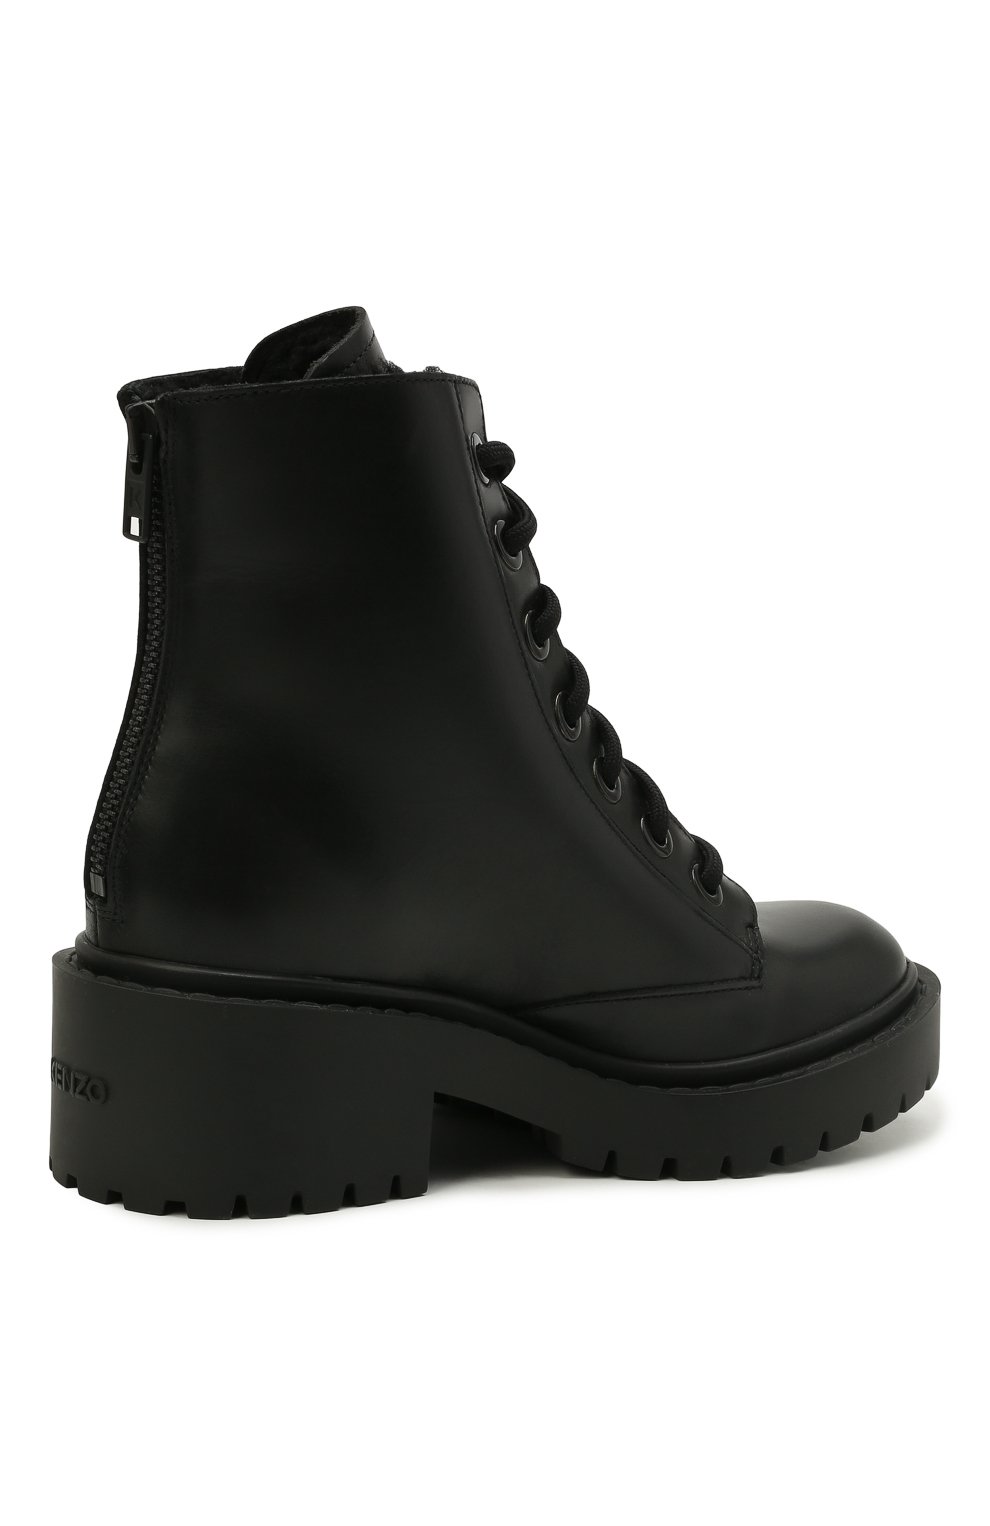 Кожаные ботинки Pike Kenzo FA62BT341L63, цвет чёрный, размер 37 - фото 3